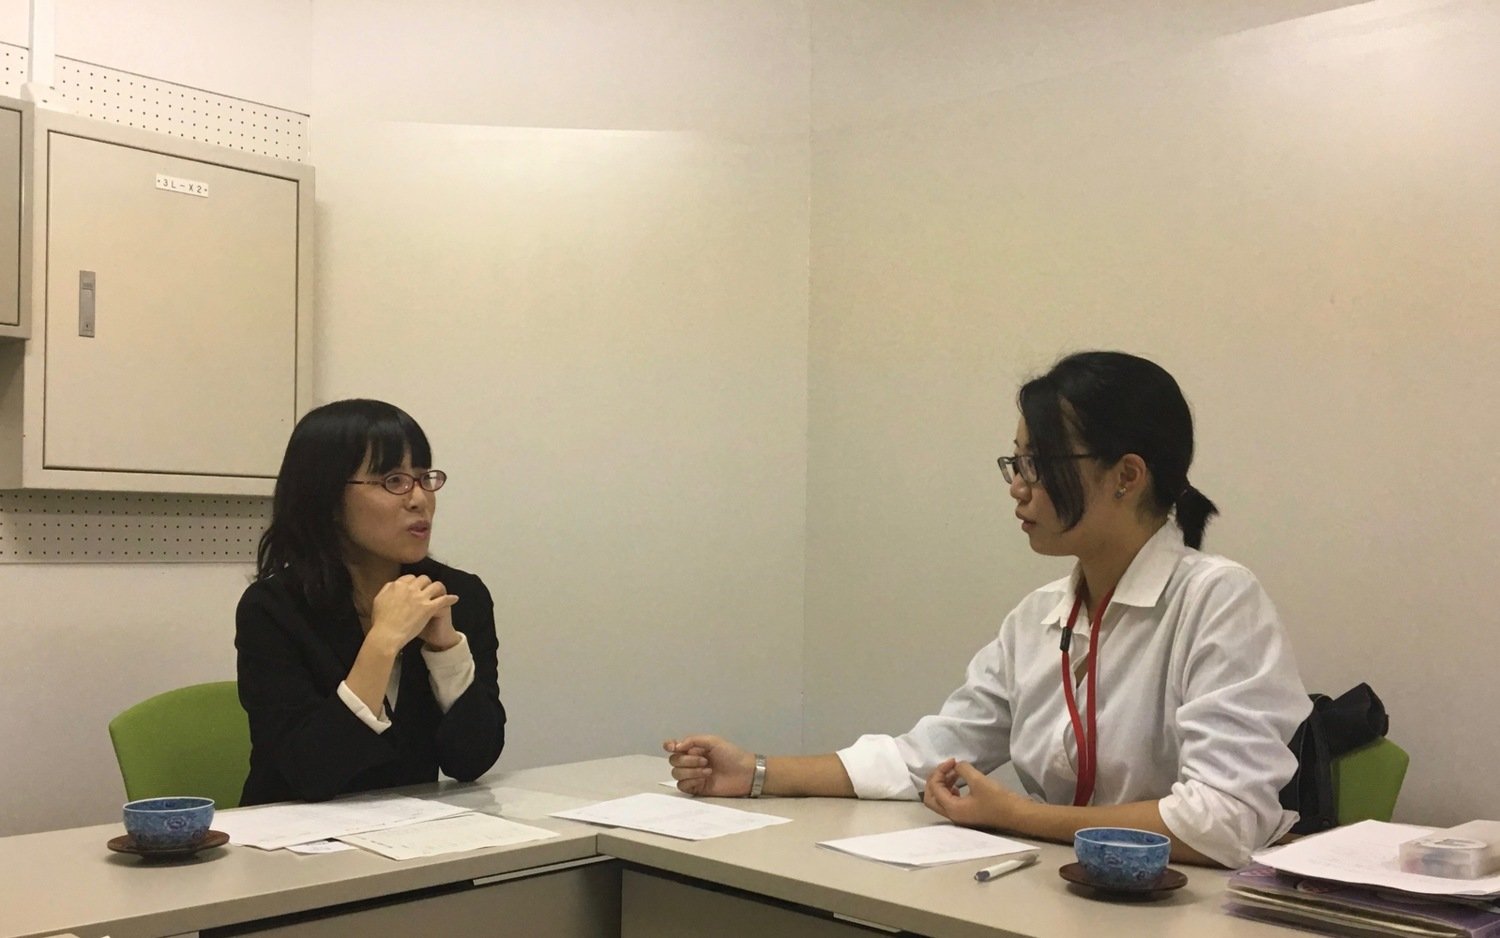 日本女子大学附属中学校　図書館司書インタビュー「生徒それぞれが意味を持って図書室に価値を見出してくれるように整えていければなと思っています」3